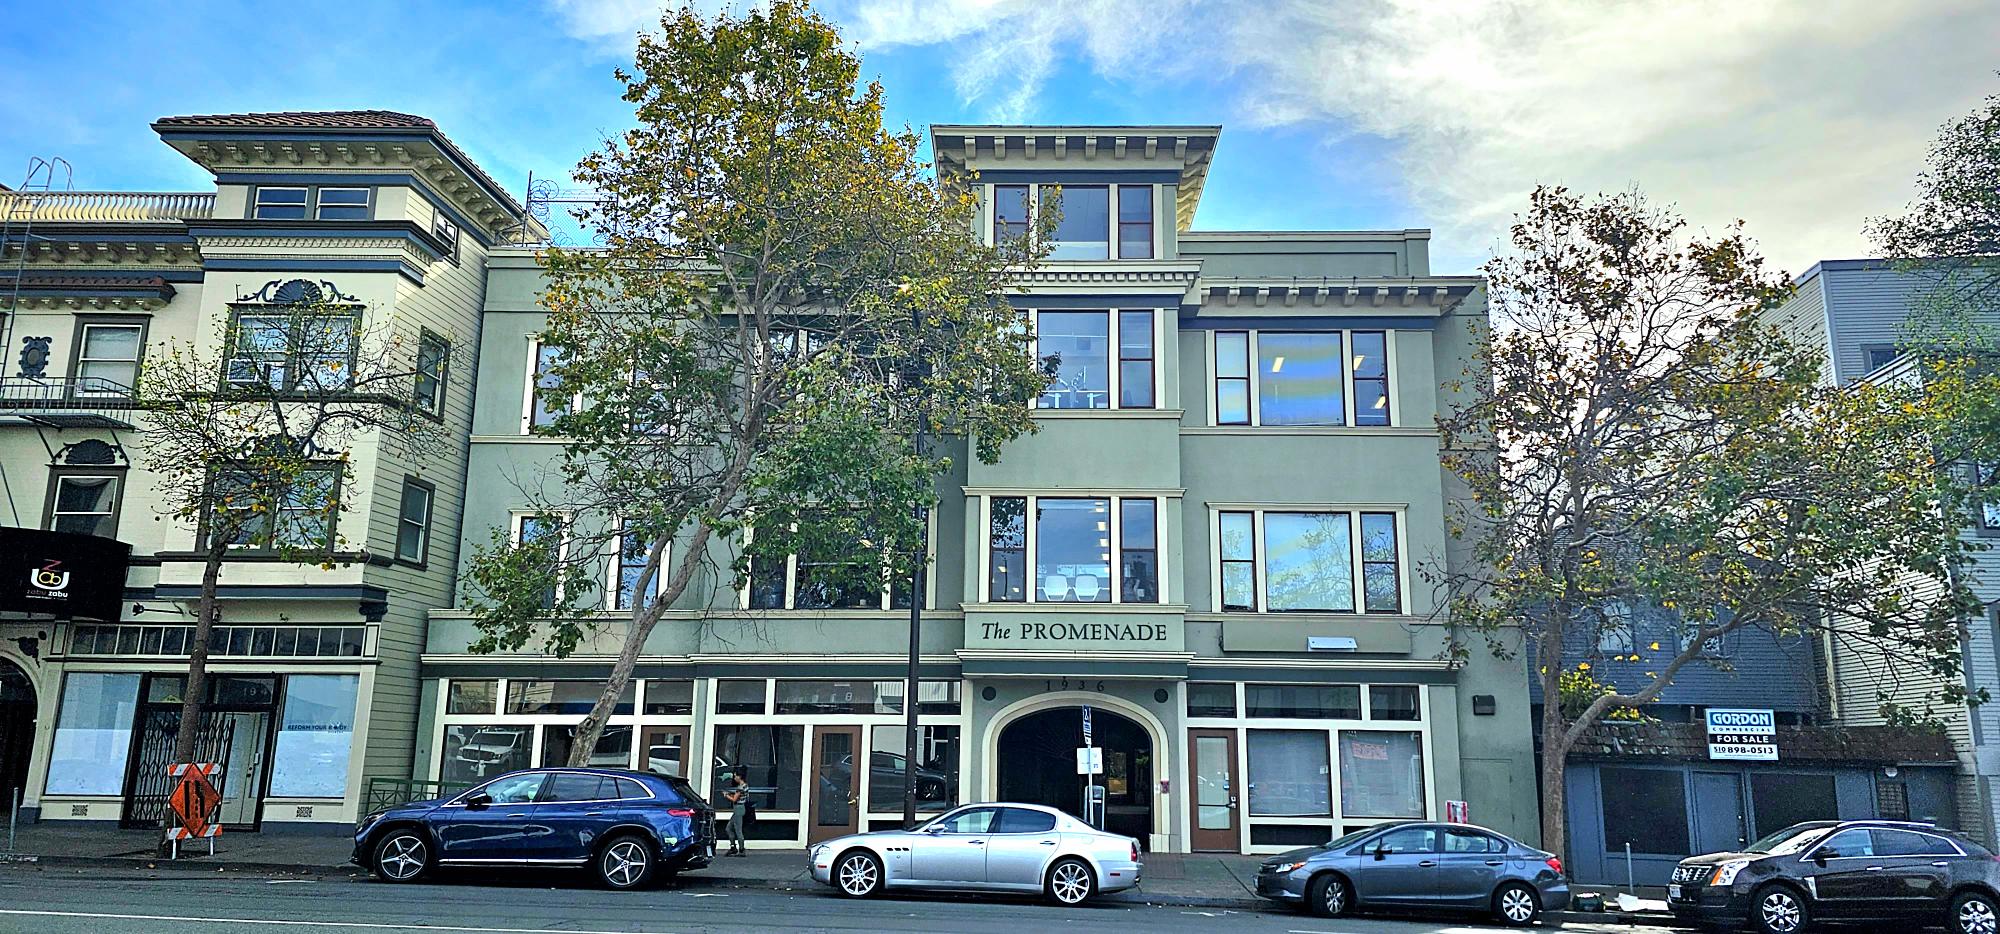 JSPS San Francisco Office image